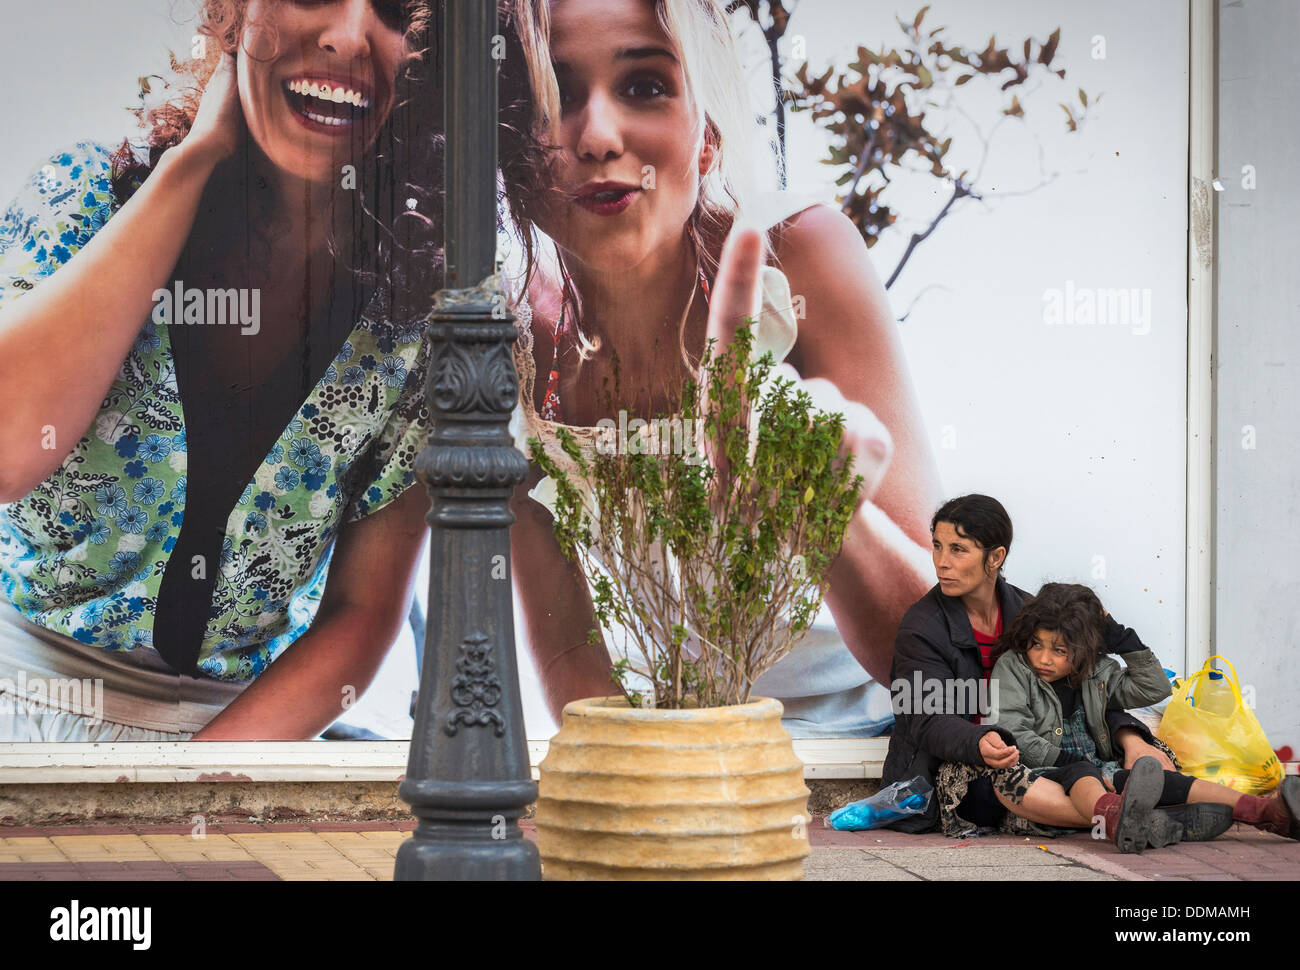 Femme et la mendicité des enfants roms à côté d'un panneau publicitaire Publicité dans la ville provinciale de Rovetta, Péloponnèse, Grèce Banque D'Images